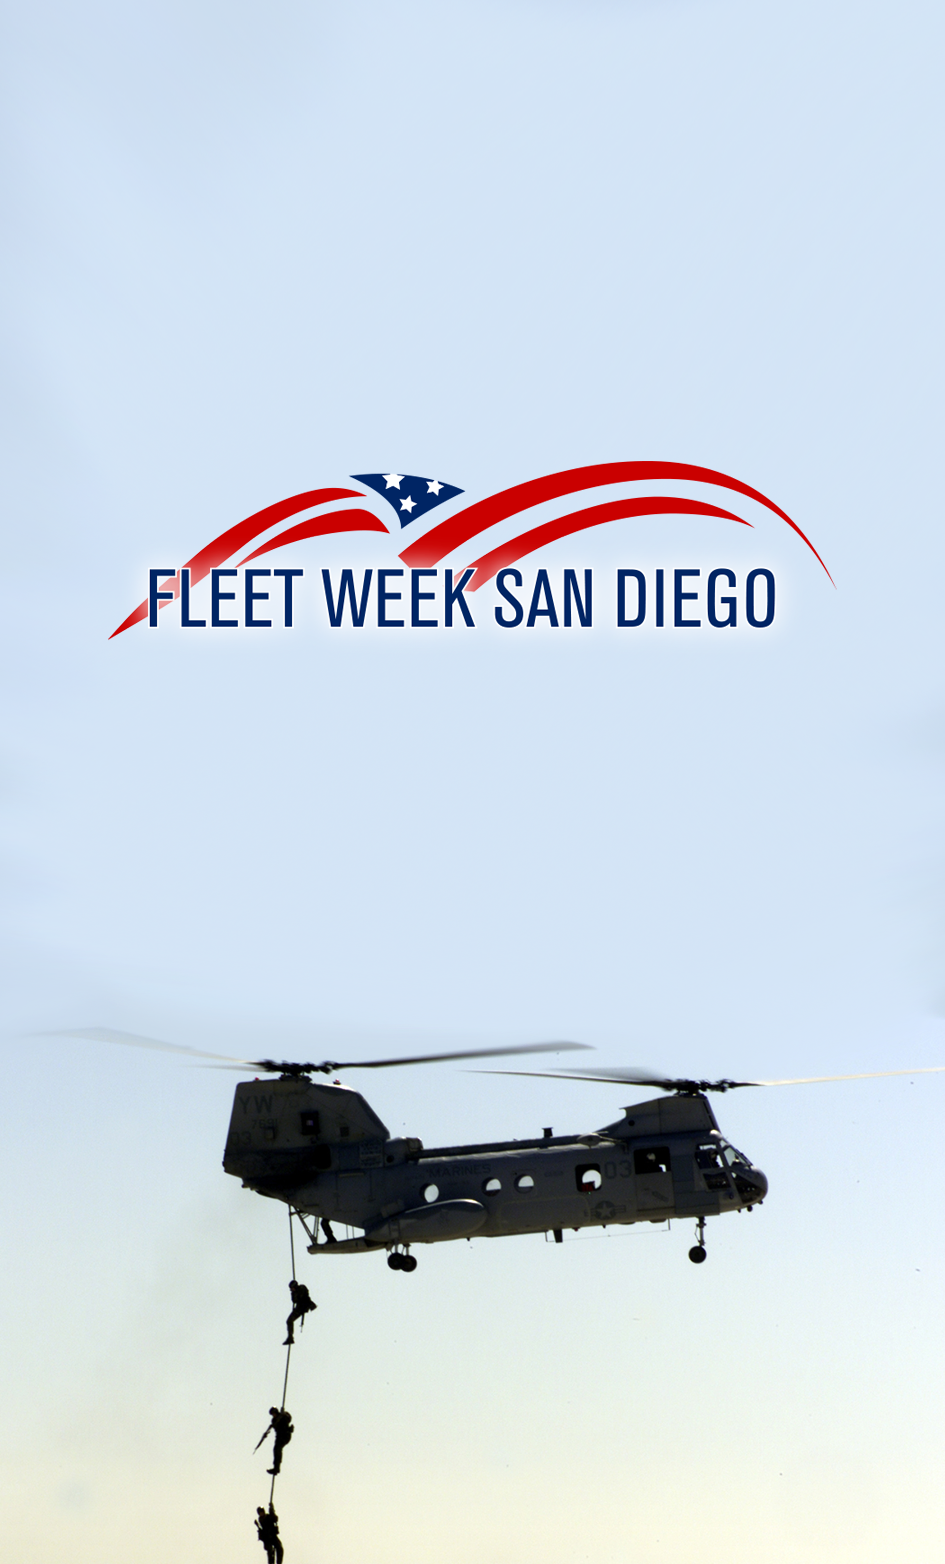 Fleet Week San Diego Event